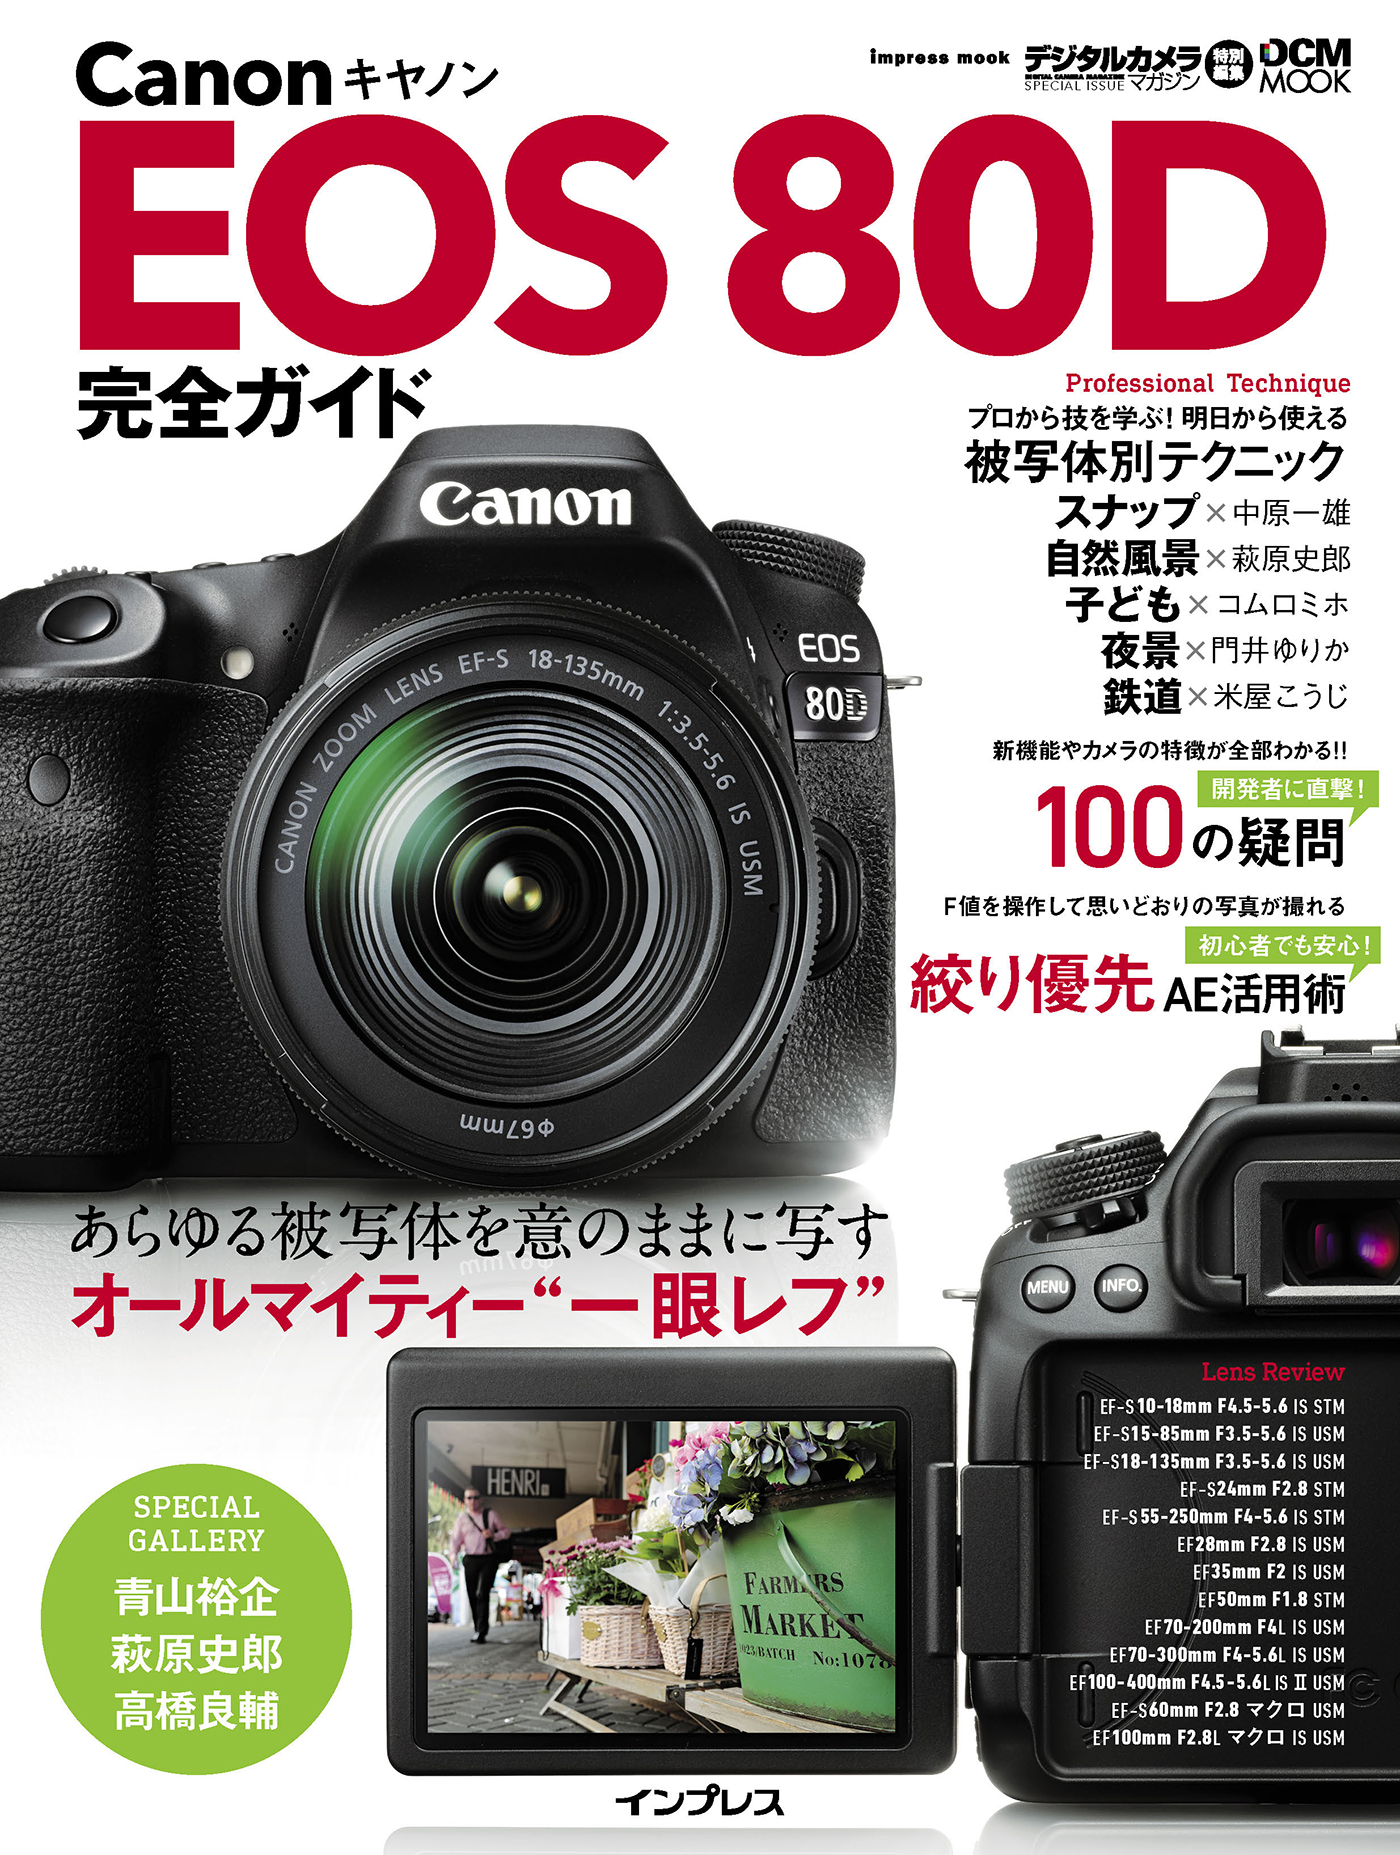 キヤノン EOS 80D 完全ガイド - 高橋良輔/青山裕企 - ビジネス・実用書 